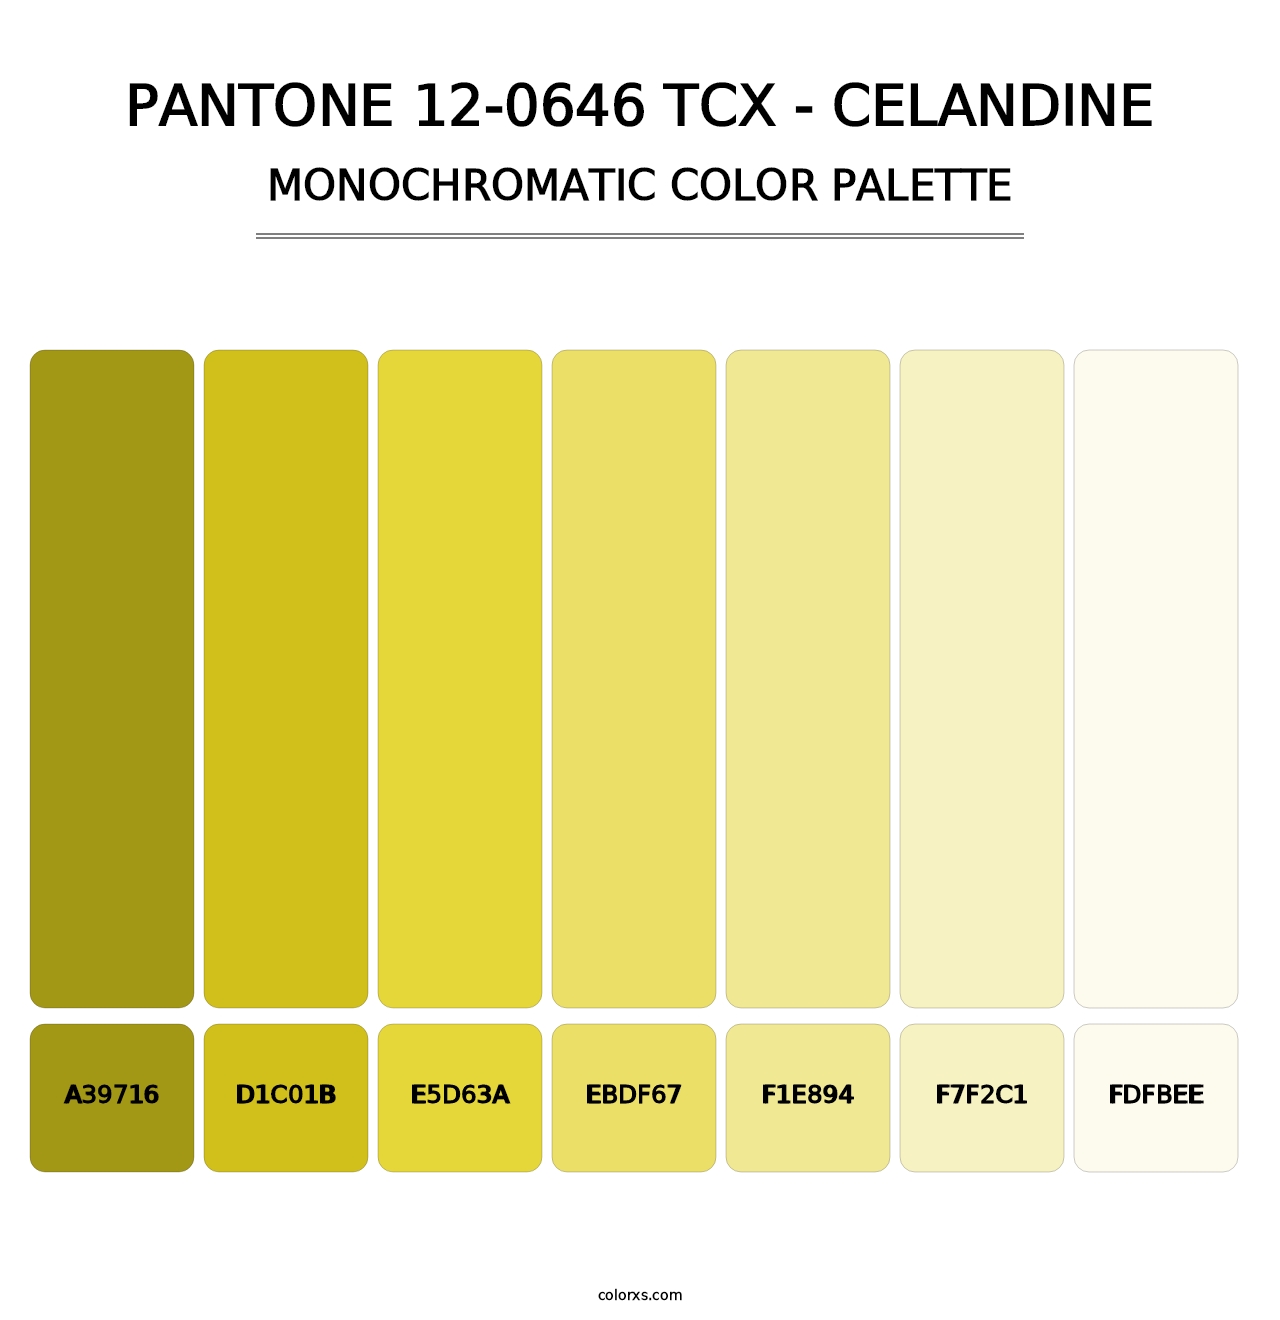 PANTONE 12-0646 TCX - Celandine - Monochromatic Color Palette